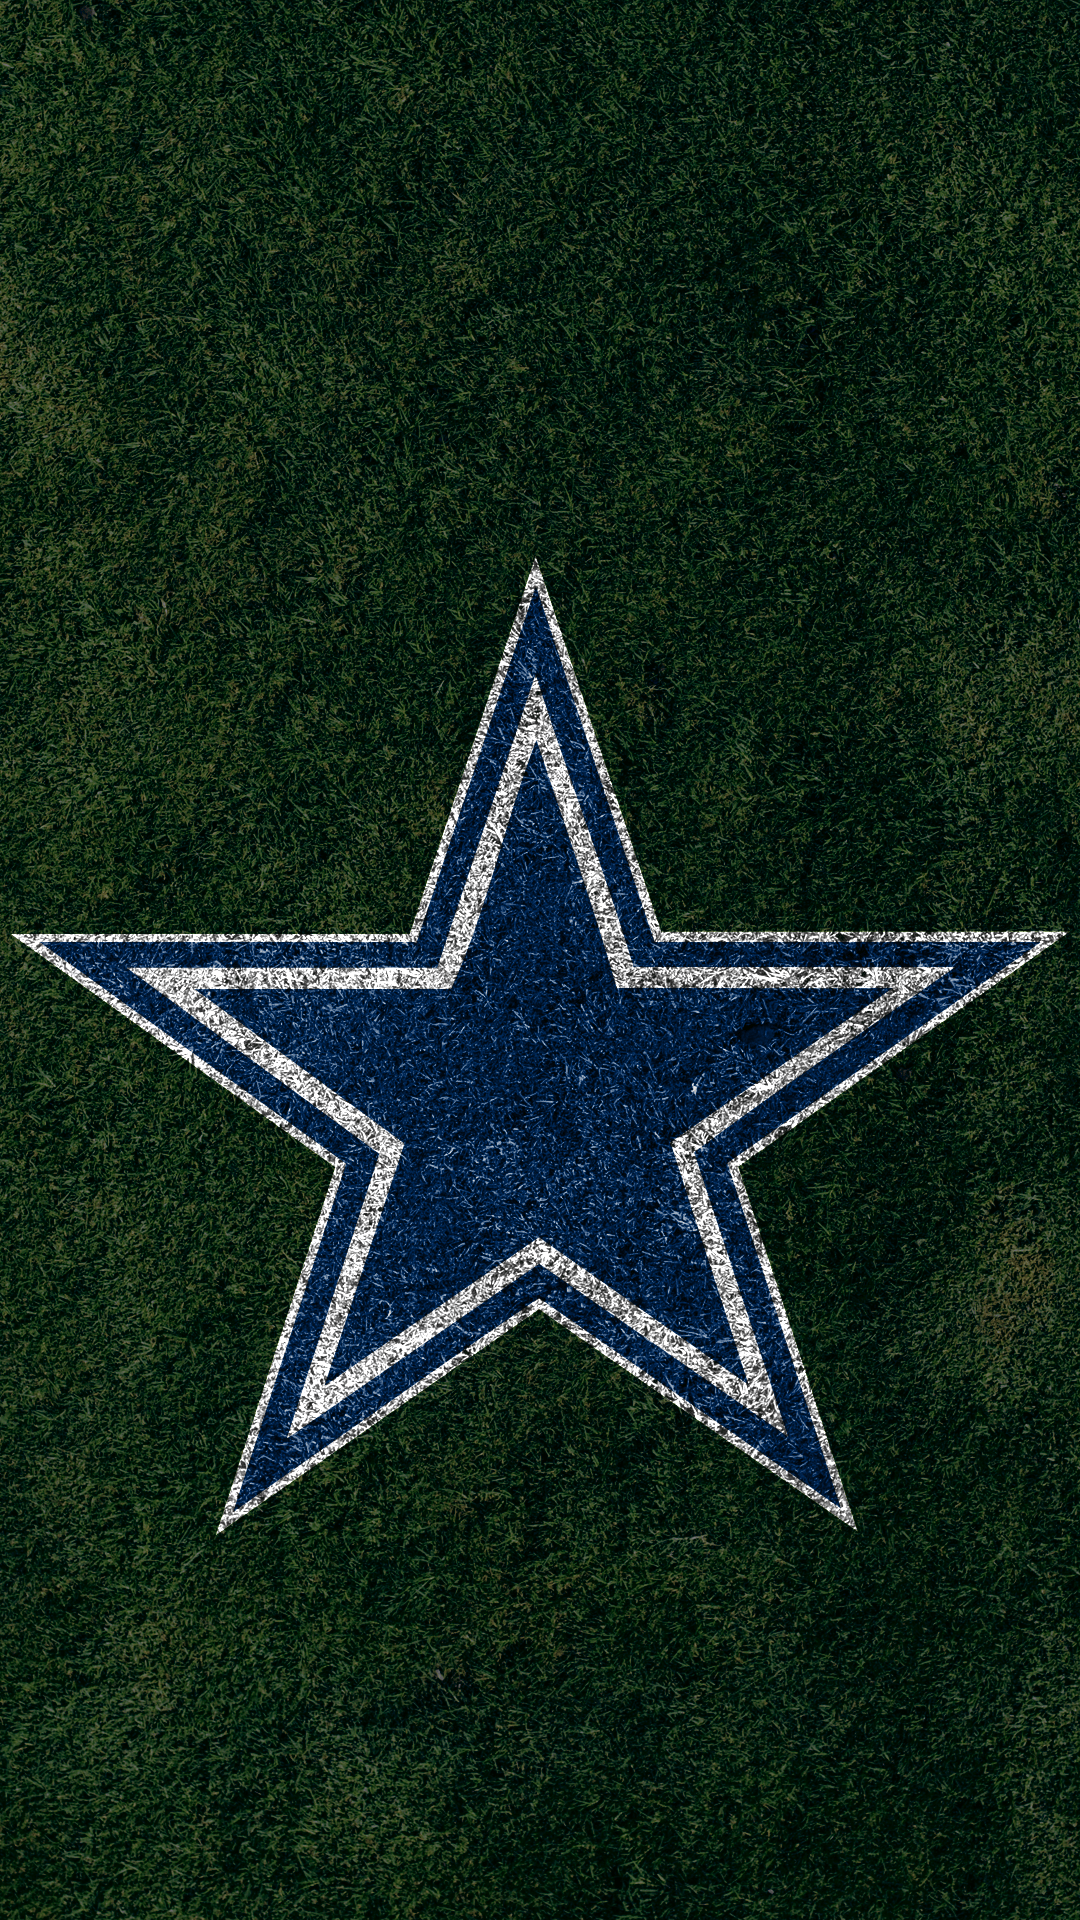 Dallas Cowboys - Dallas Cowboys Wallpaper (9173303) - Fanpop